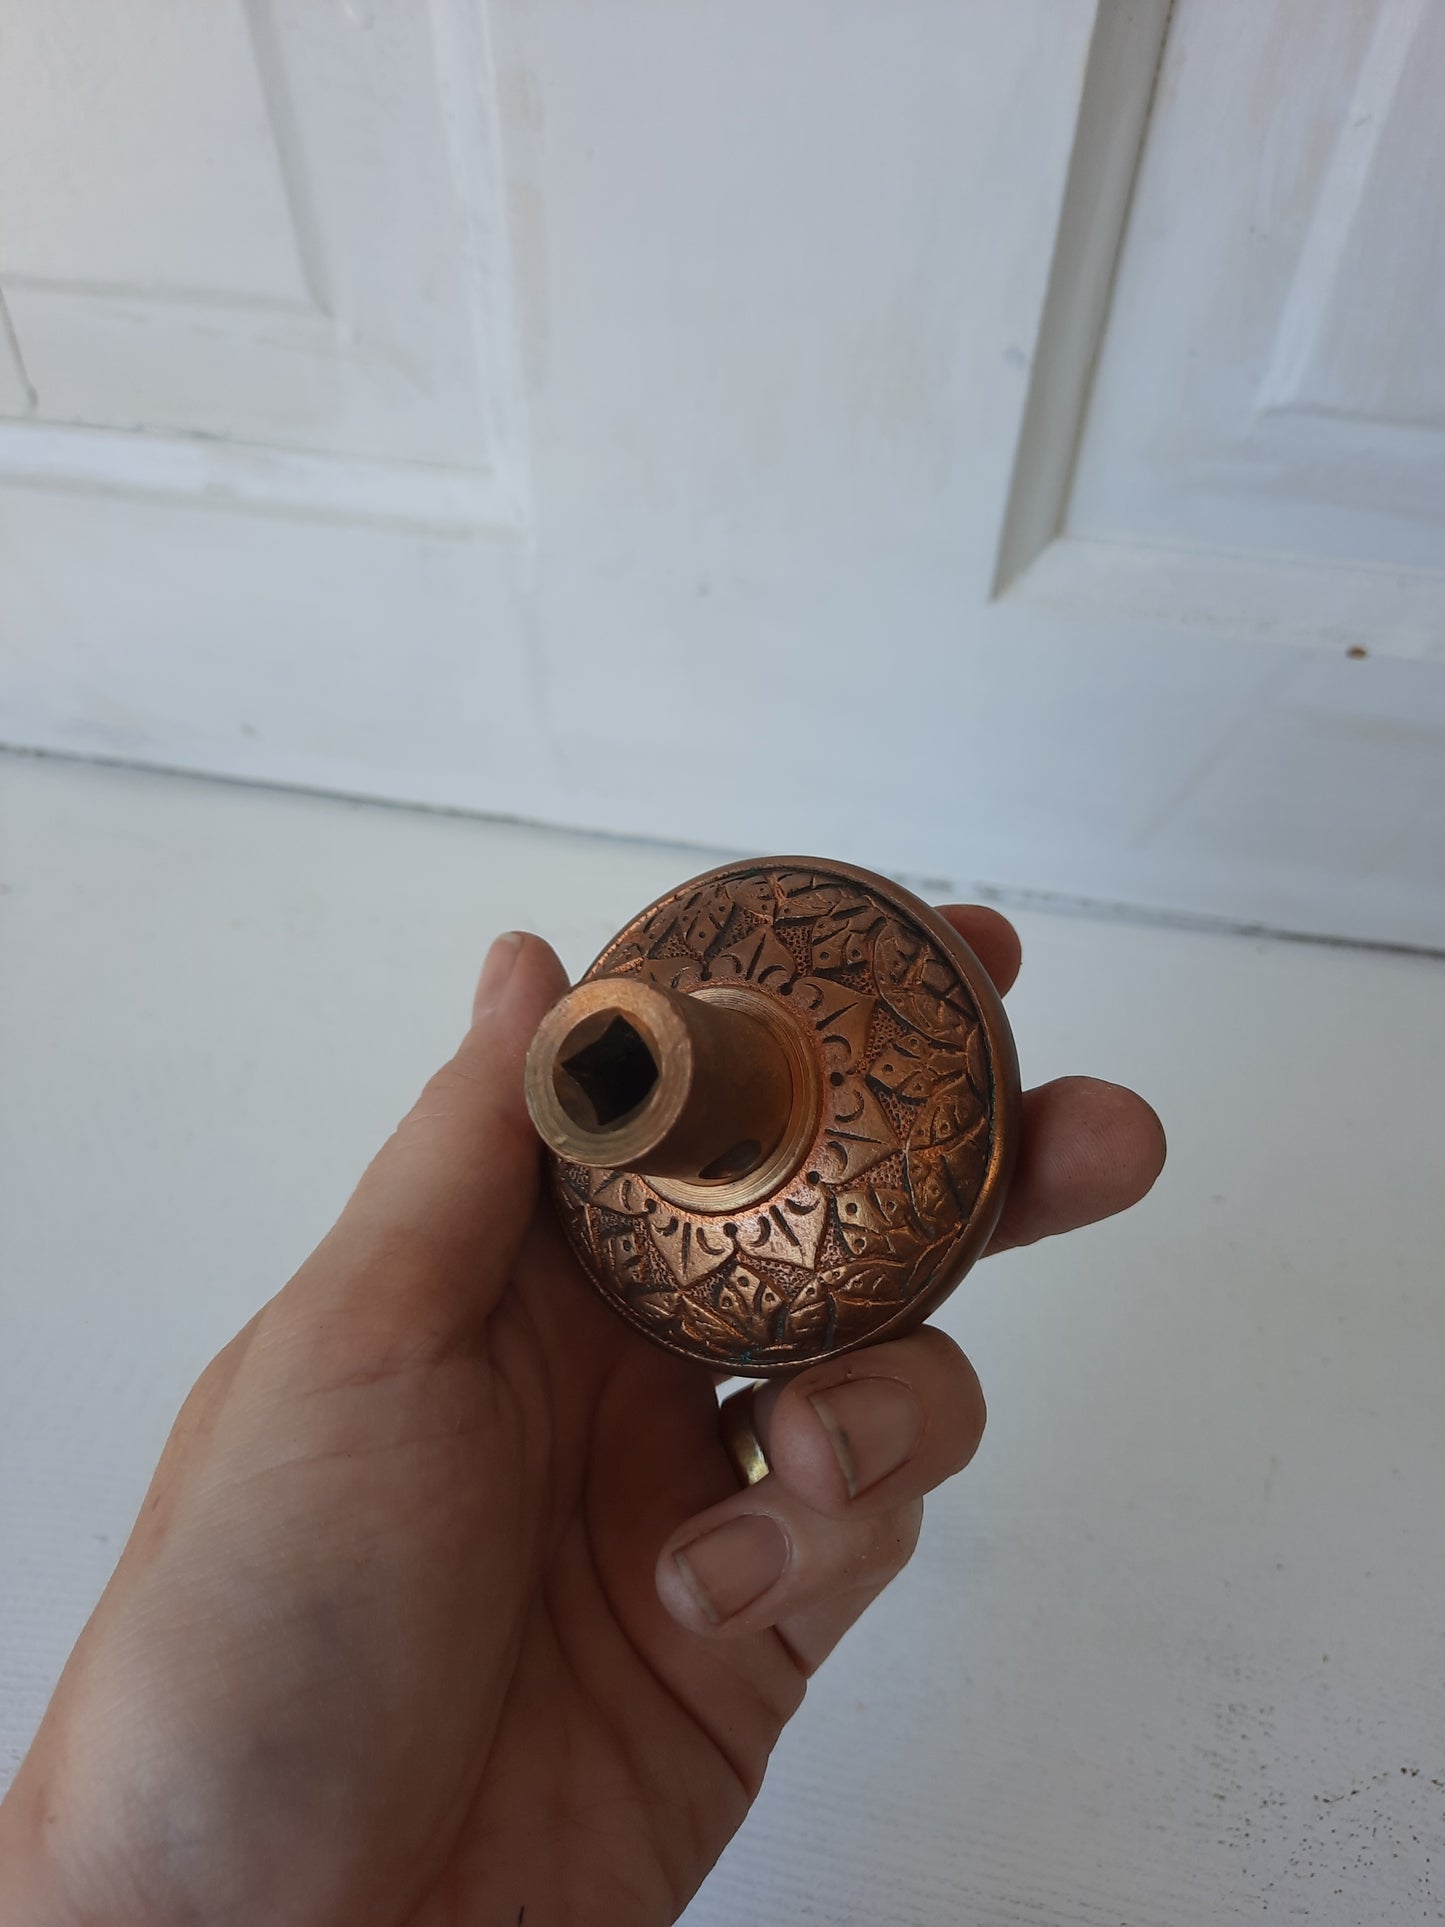 Russell Erwin Bronze Eastlake Flower Doorknob from Victorian Era, Vintage Brass Doorknob, Geometric Design 083112